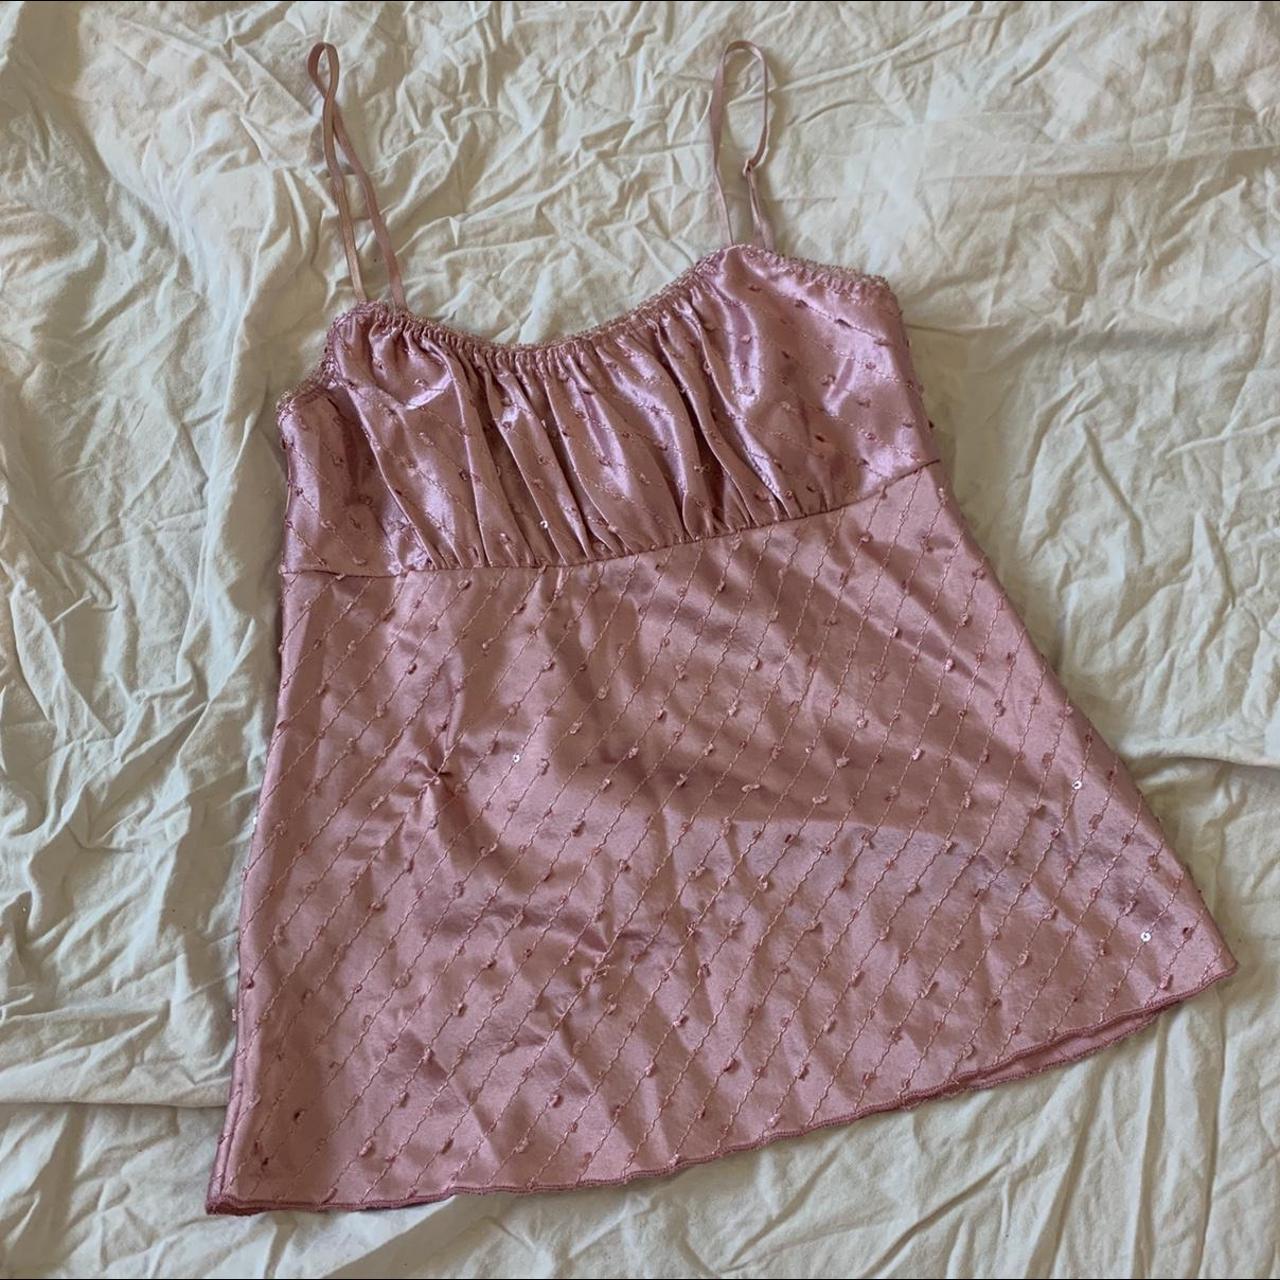 ⊹₊┈ㆍ┈ㆍ┈ㆍ୨୧ㆍ┈ㆍ┈ㆍ┈₊⊹♡꘎ 💖 pink sequin strappy top... - Depop